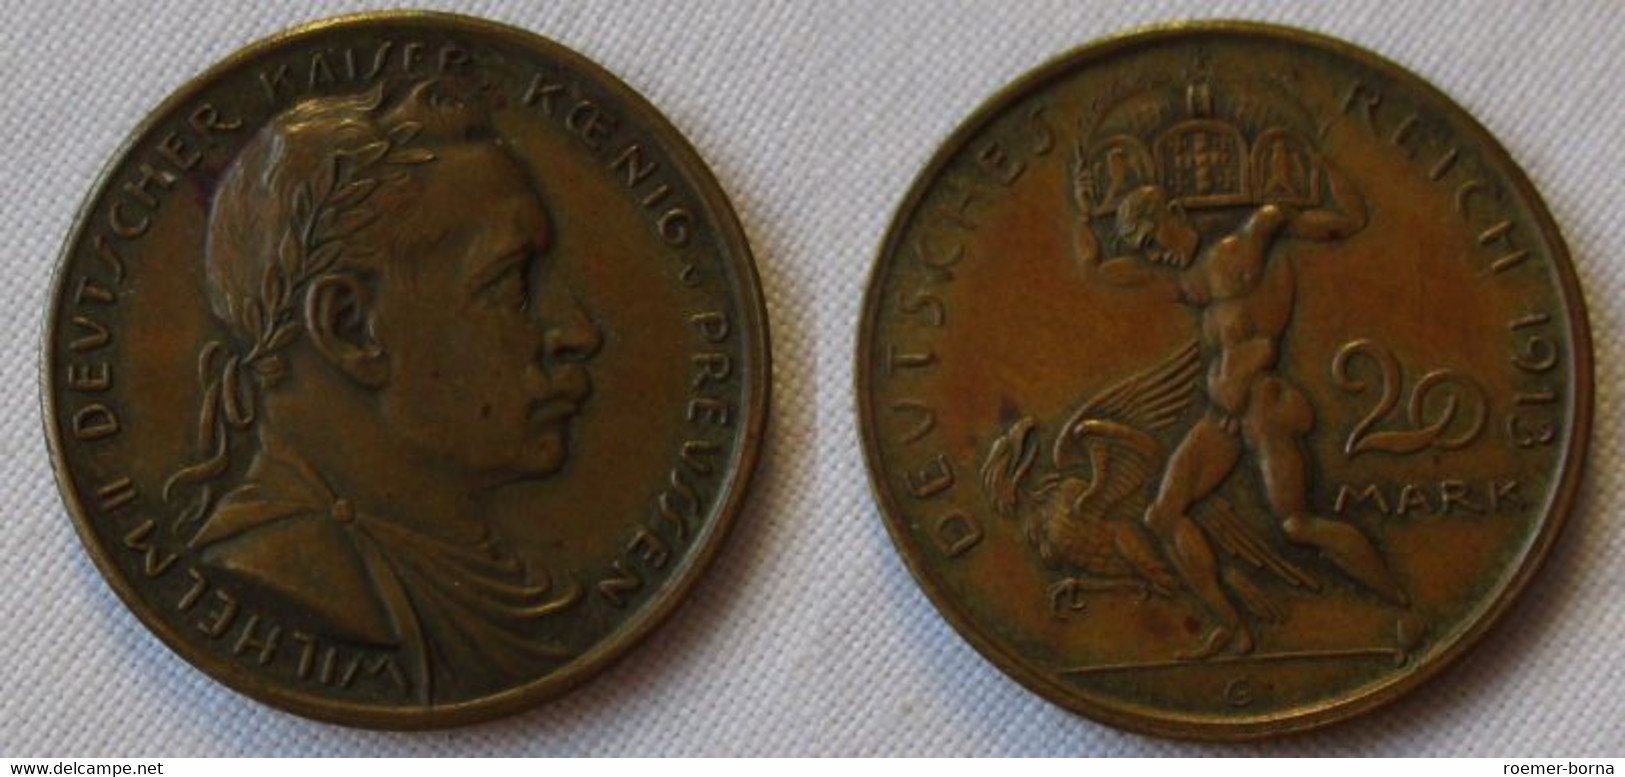 20 Mark Probeprägung Deutsches Reich Wilhelm II. Preussen - Karl Goetz (120161) - 5, 10 & 20 Mark Gold